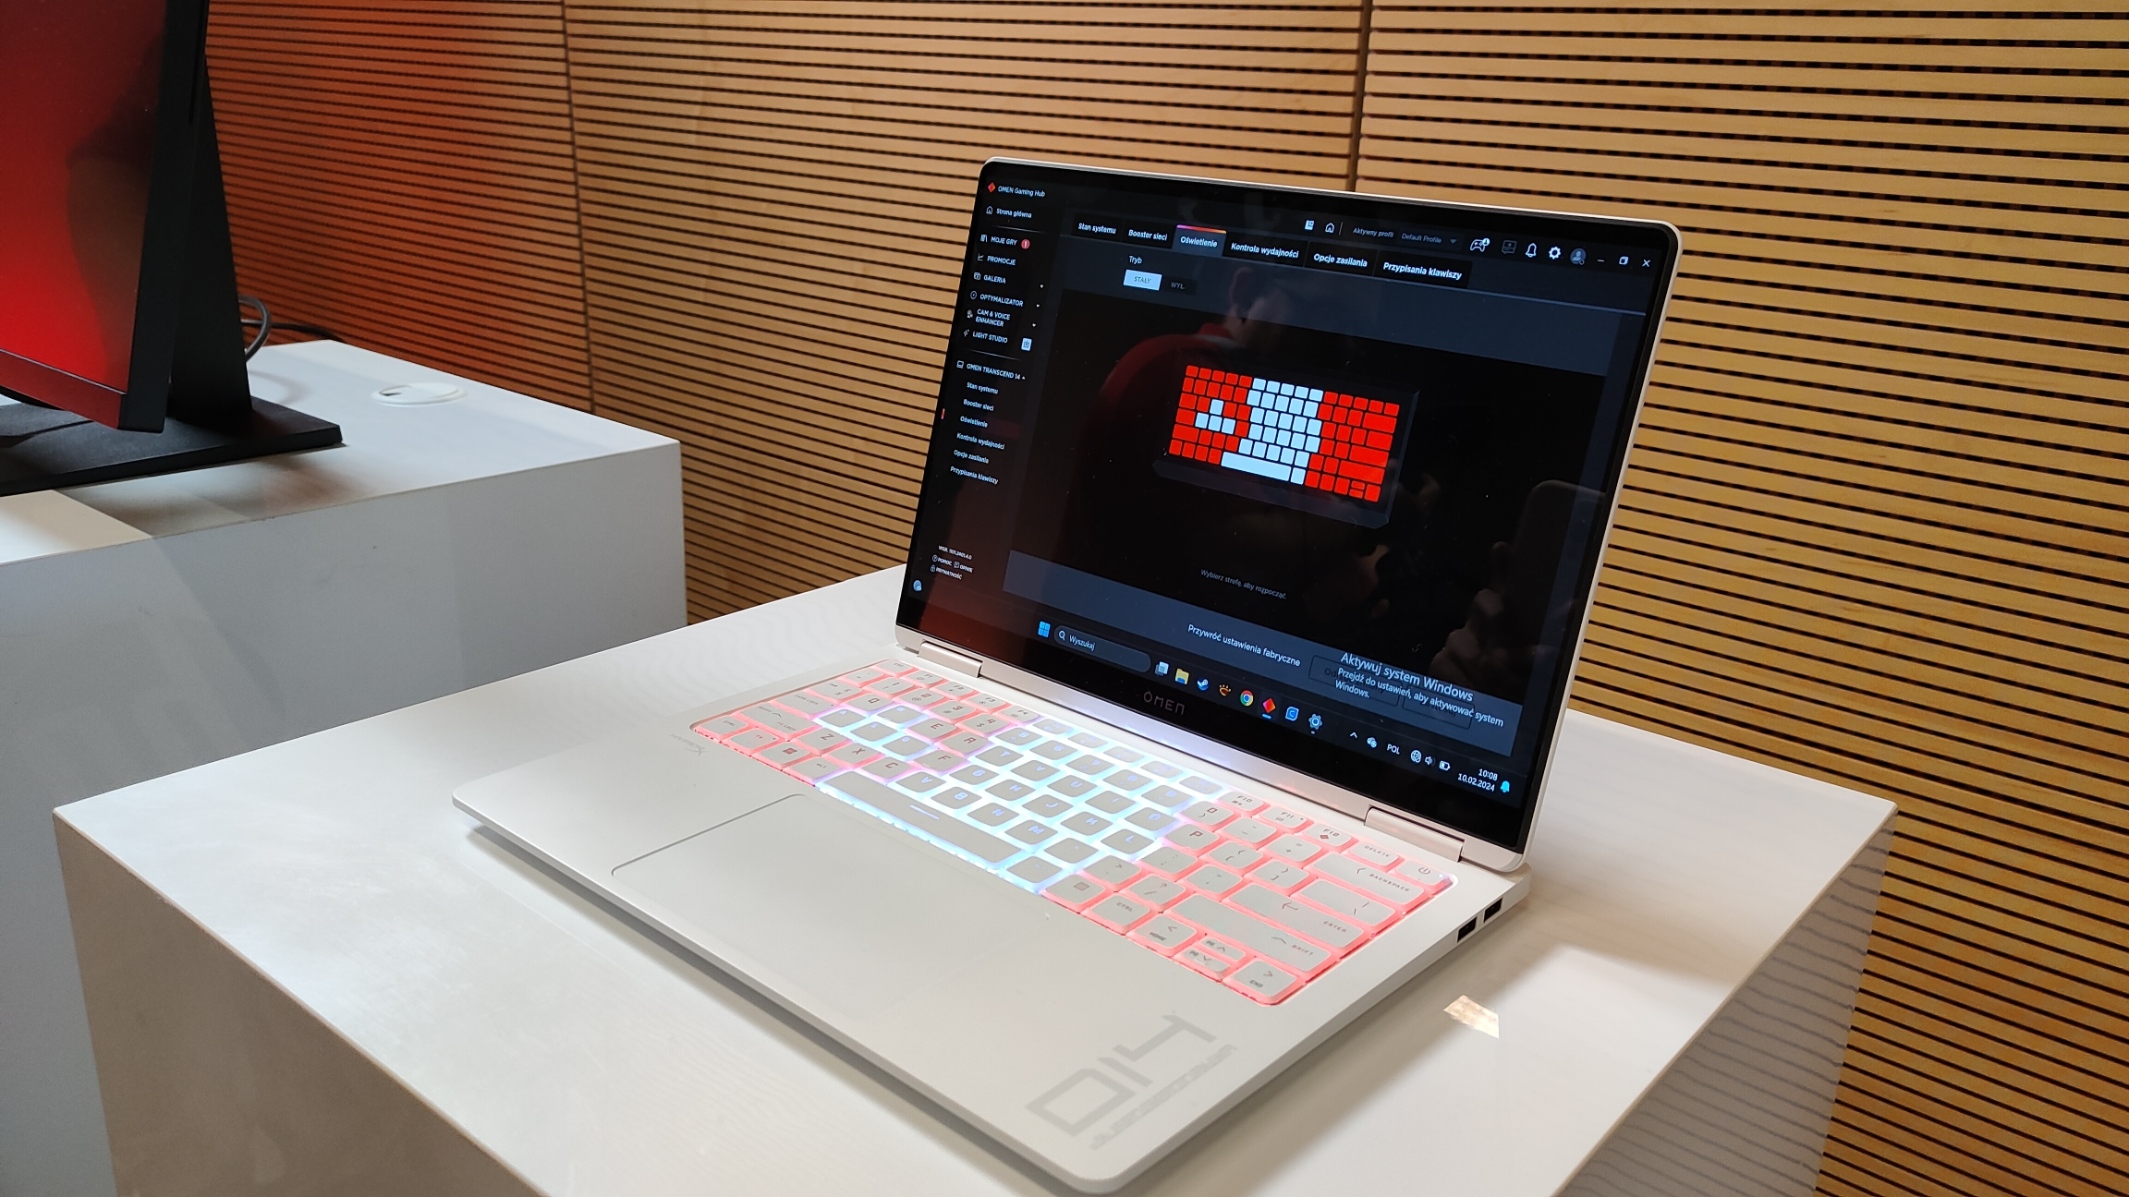 Laptop gamingowy HP Omen Transcend 14 na białym blacie z podświetlaną klawiaturą w czerwonych i białych barwach, z otwartym oprogramowaniem do dostosowywania ustawień klawiatury na ekranie, znajdujący się na wystawie z drewnianym tłem w pionowe linie.